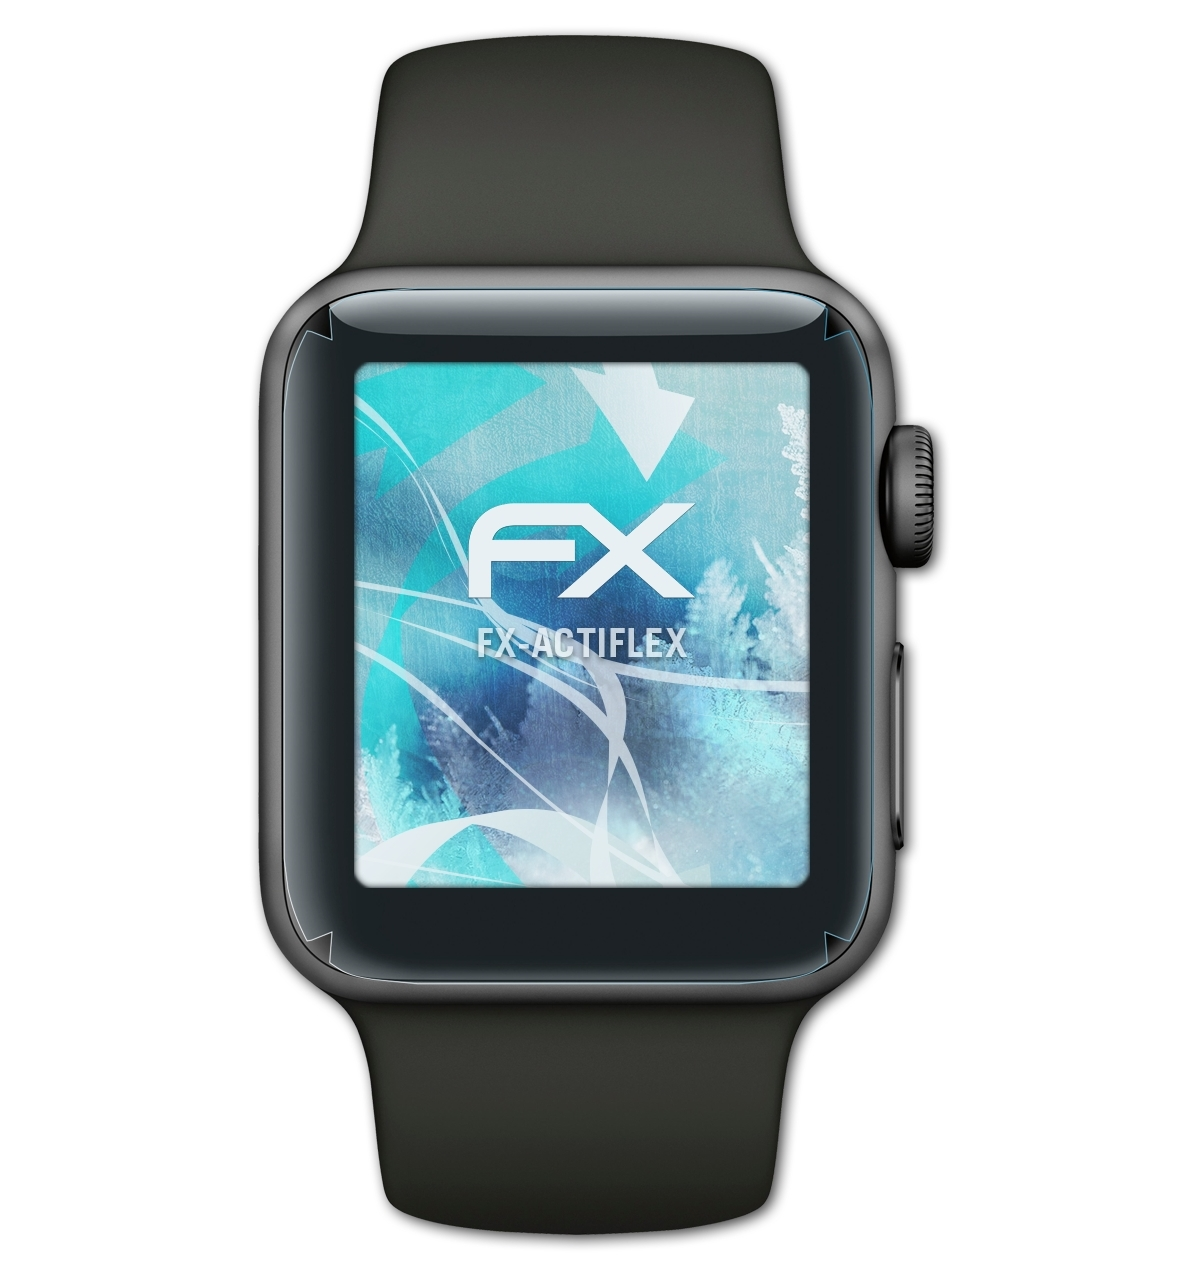 38 3)) Apple ATFOLIX mm 3x Watch FX-ActiFleX (Series Displayschutz(für